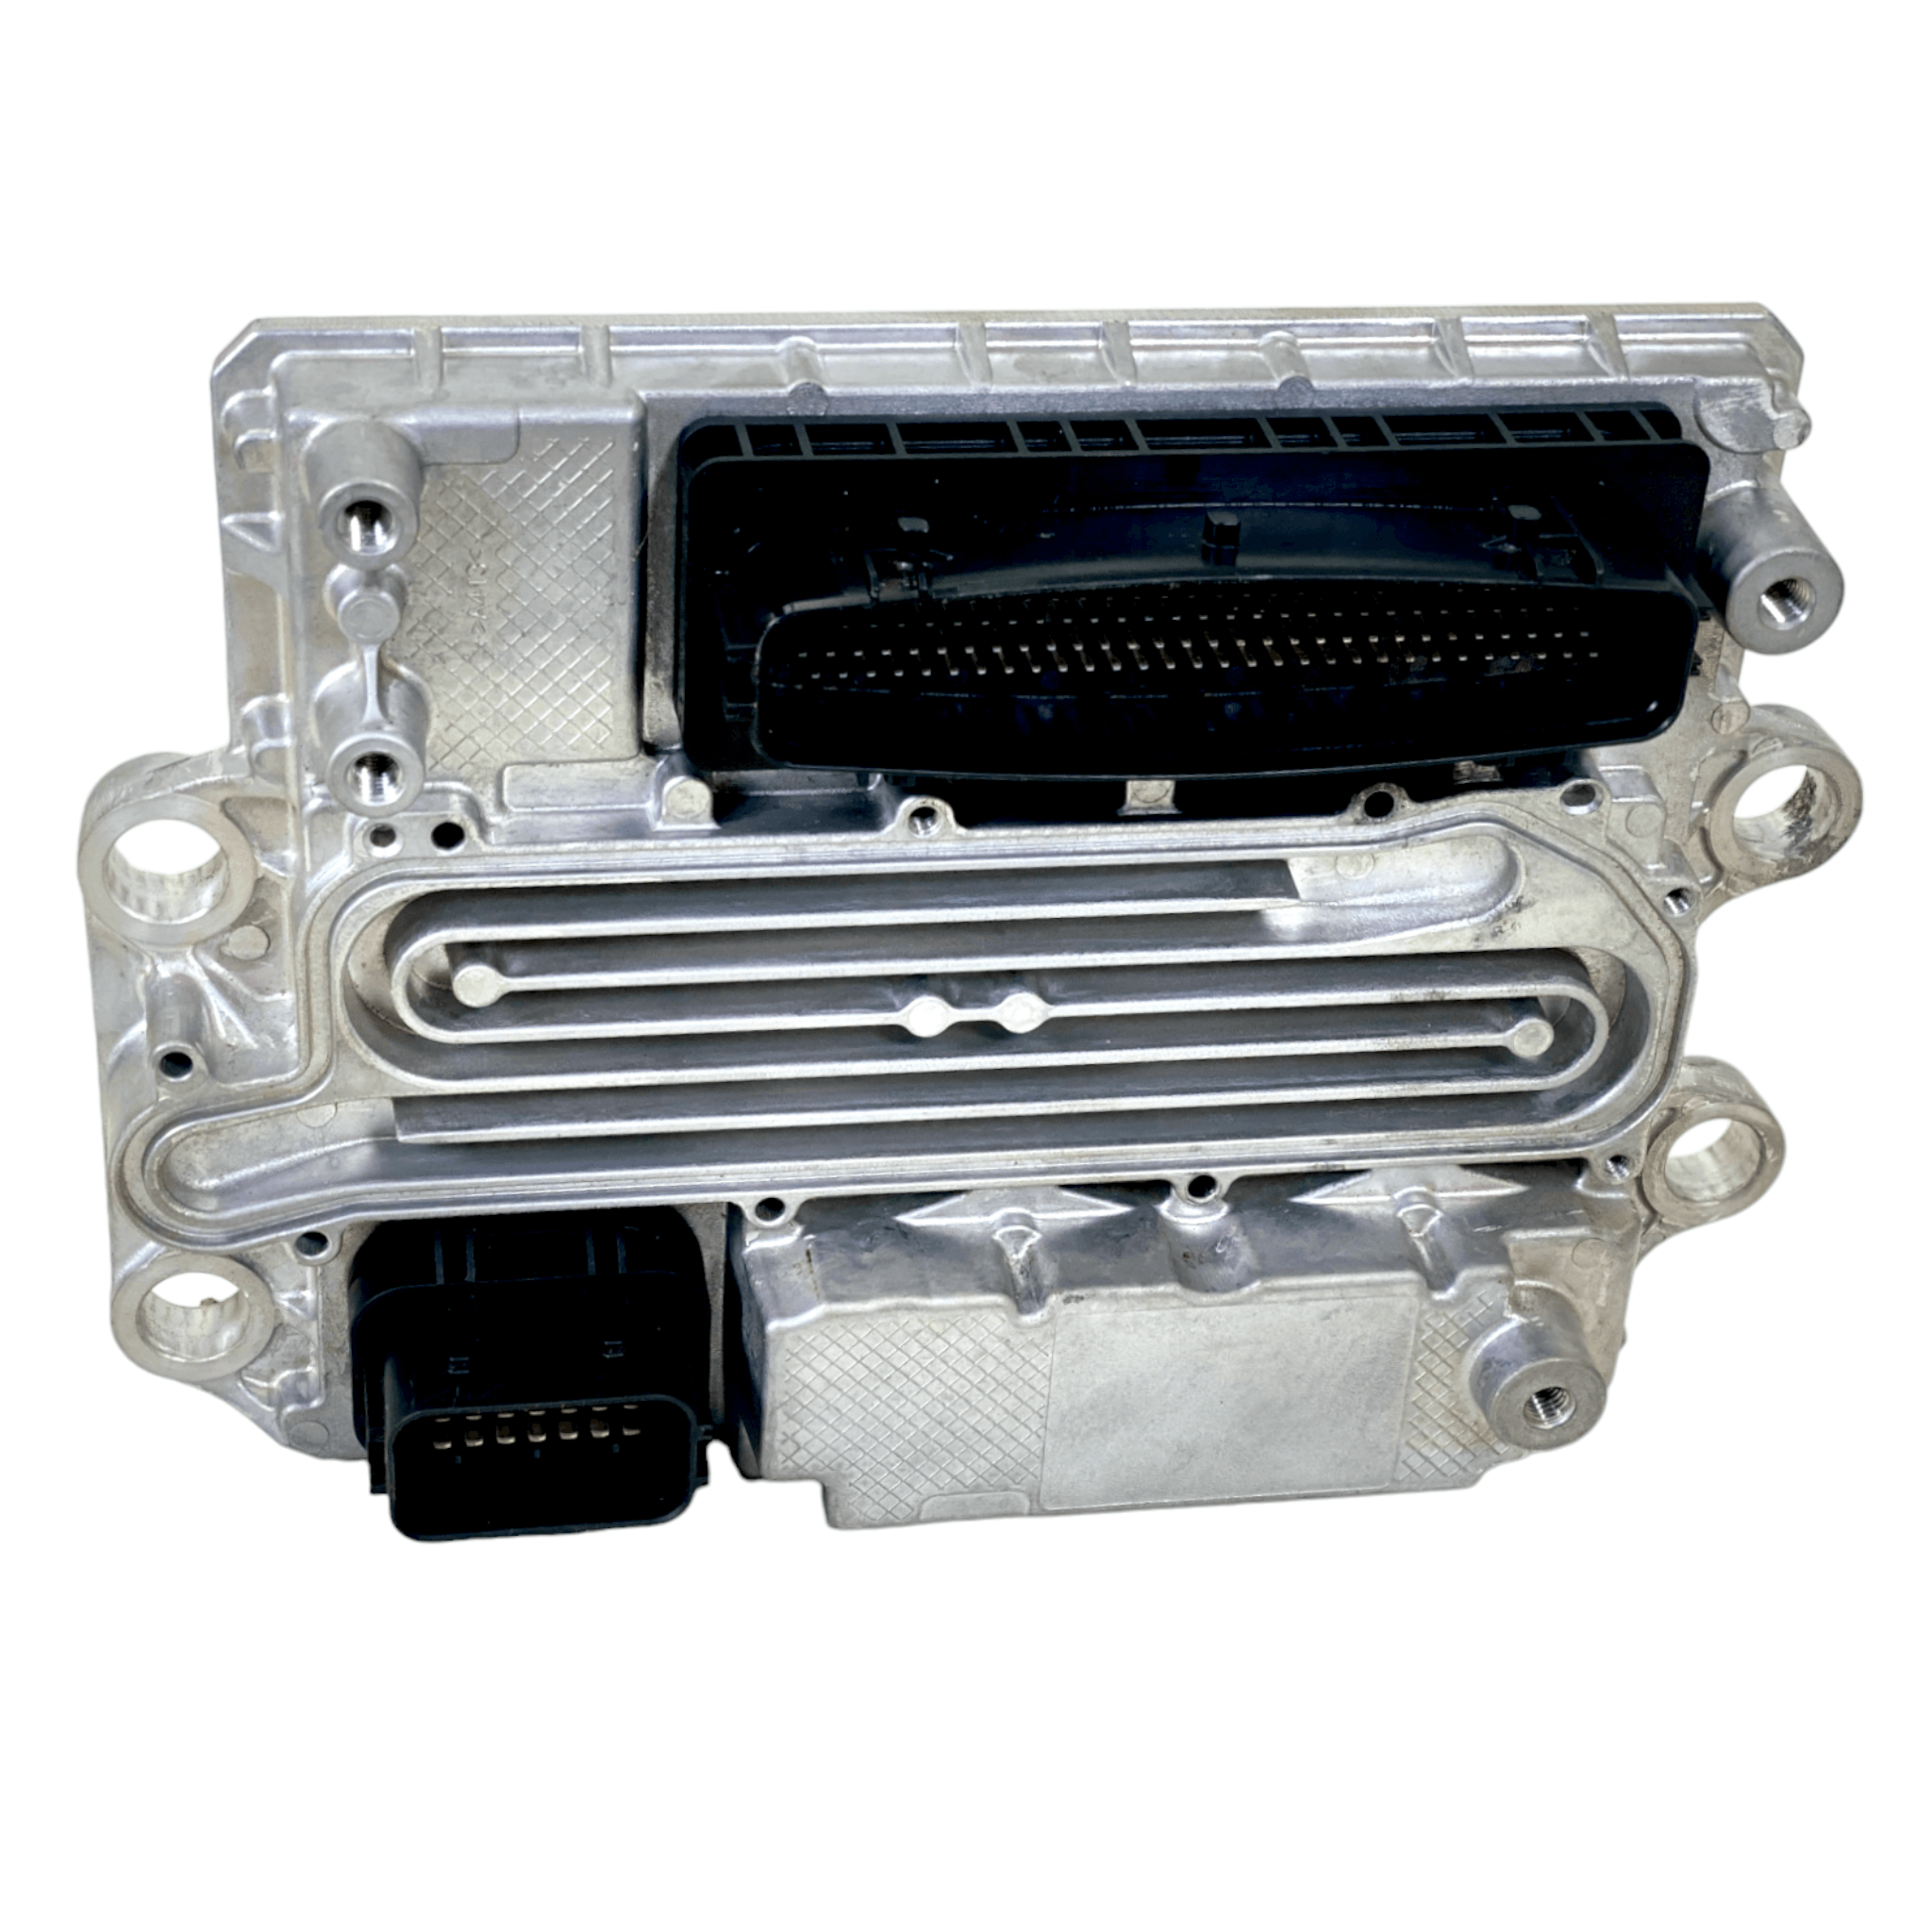 A0004466854 Genuine Detroit Diesel Ecu Acm2.1 Aftertreatment Control Module  Dd13 Dd15 Dd16 Ghg17 Evo